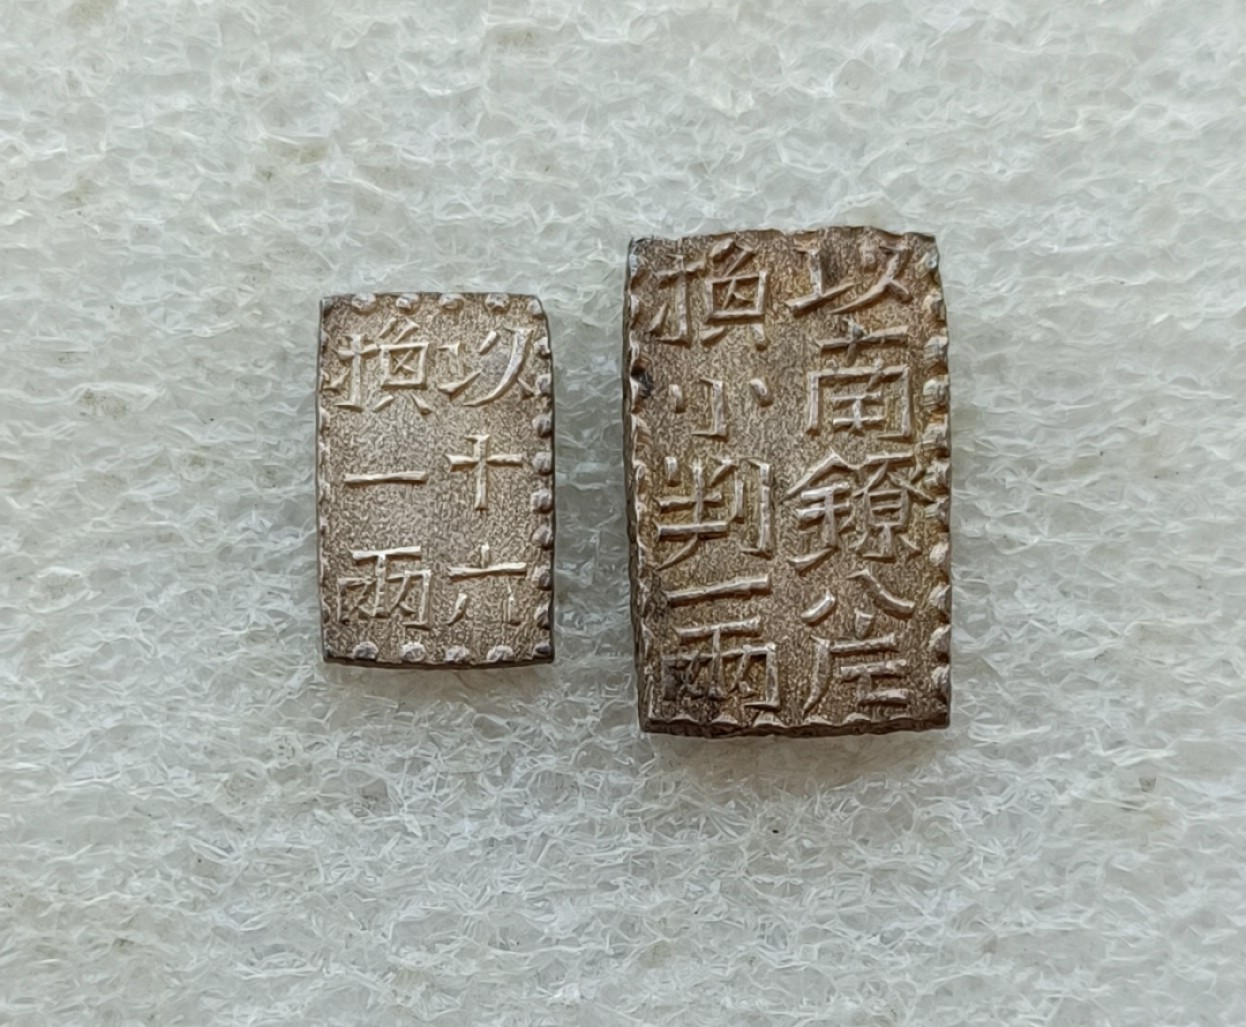 日本新南镣文政一朱银、二朱银两枚全套MS级未流通品相单枚1万円+的品种 